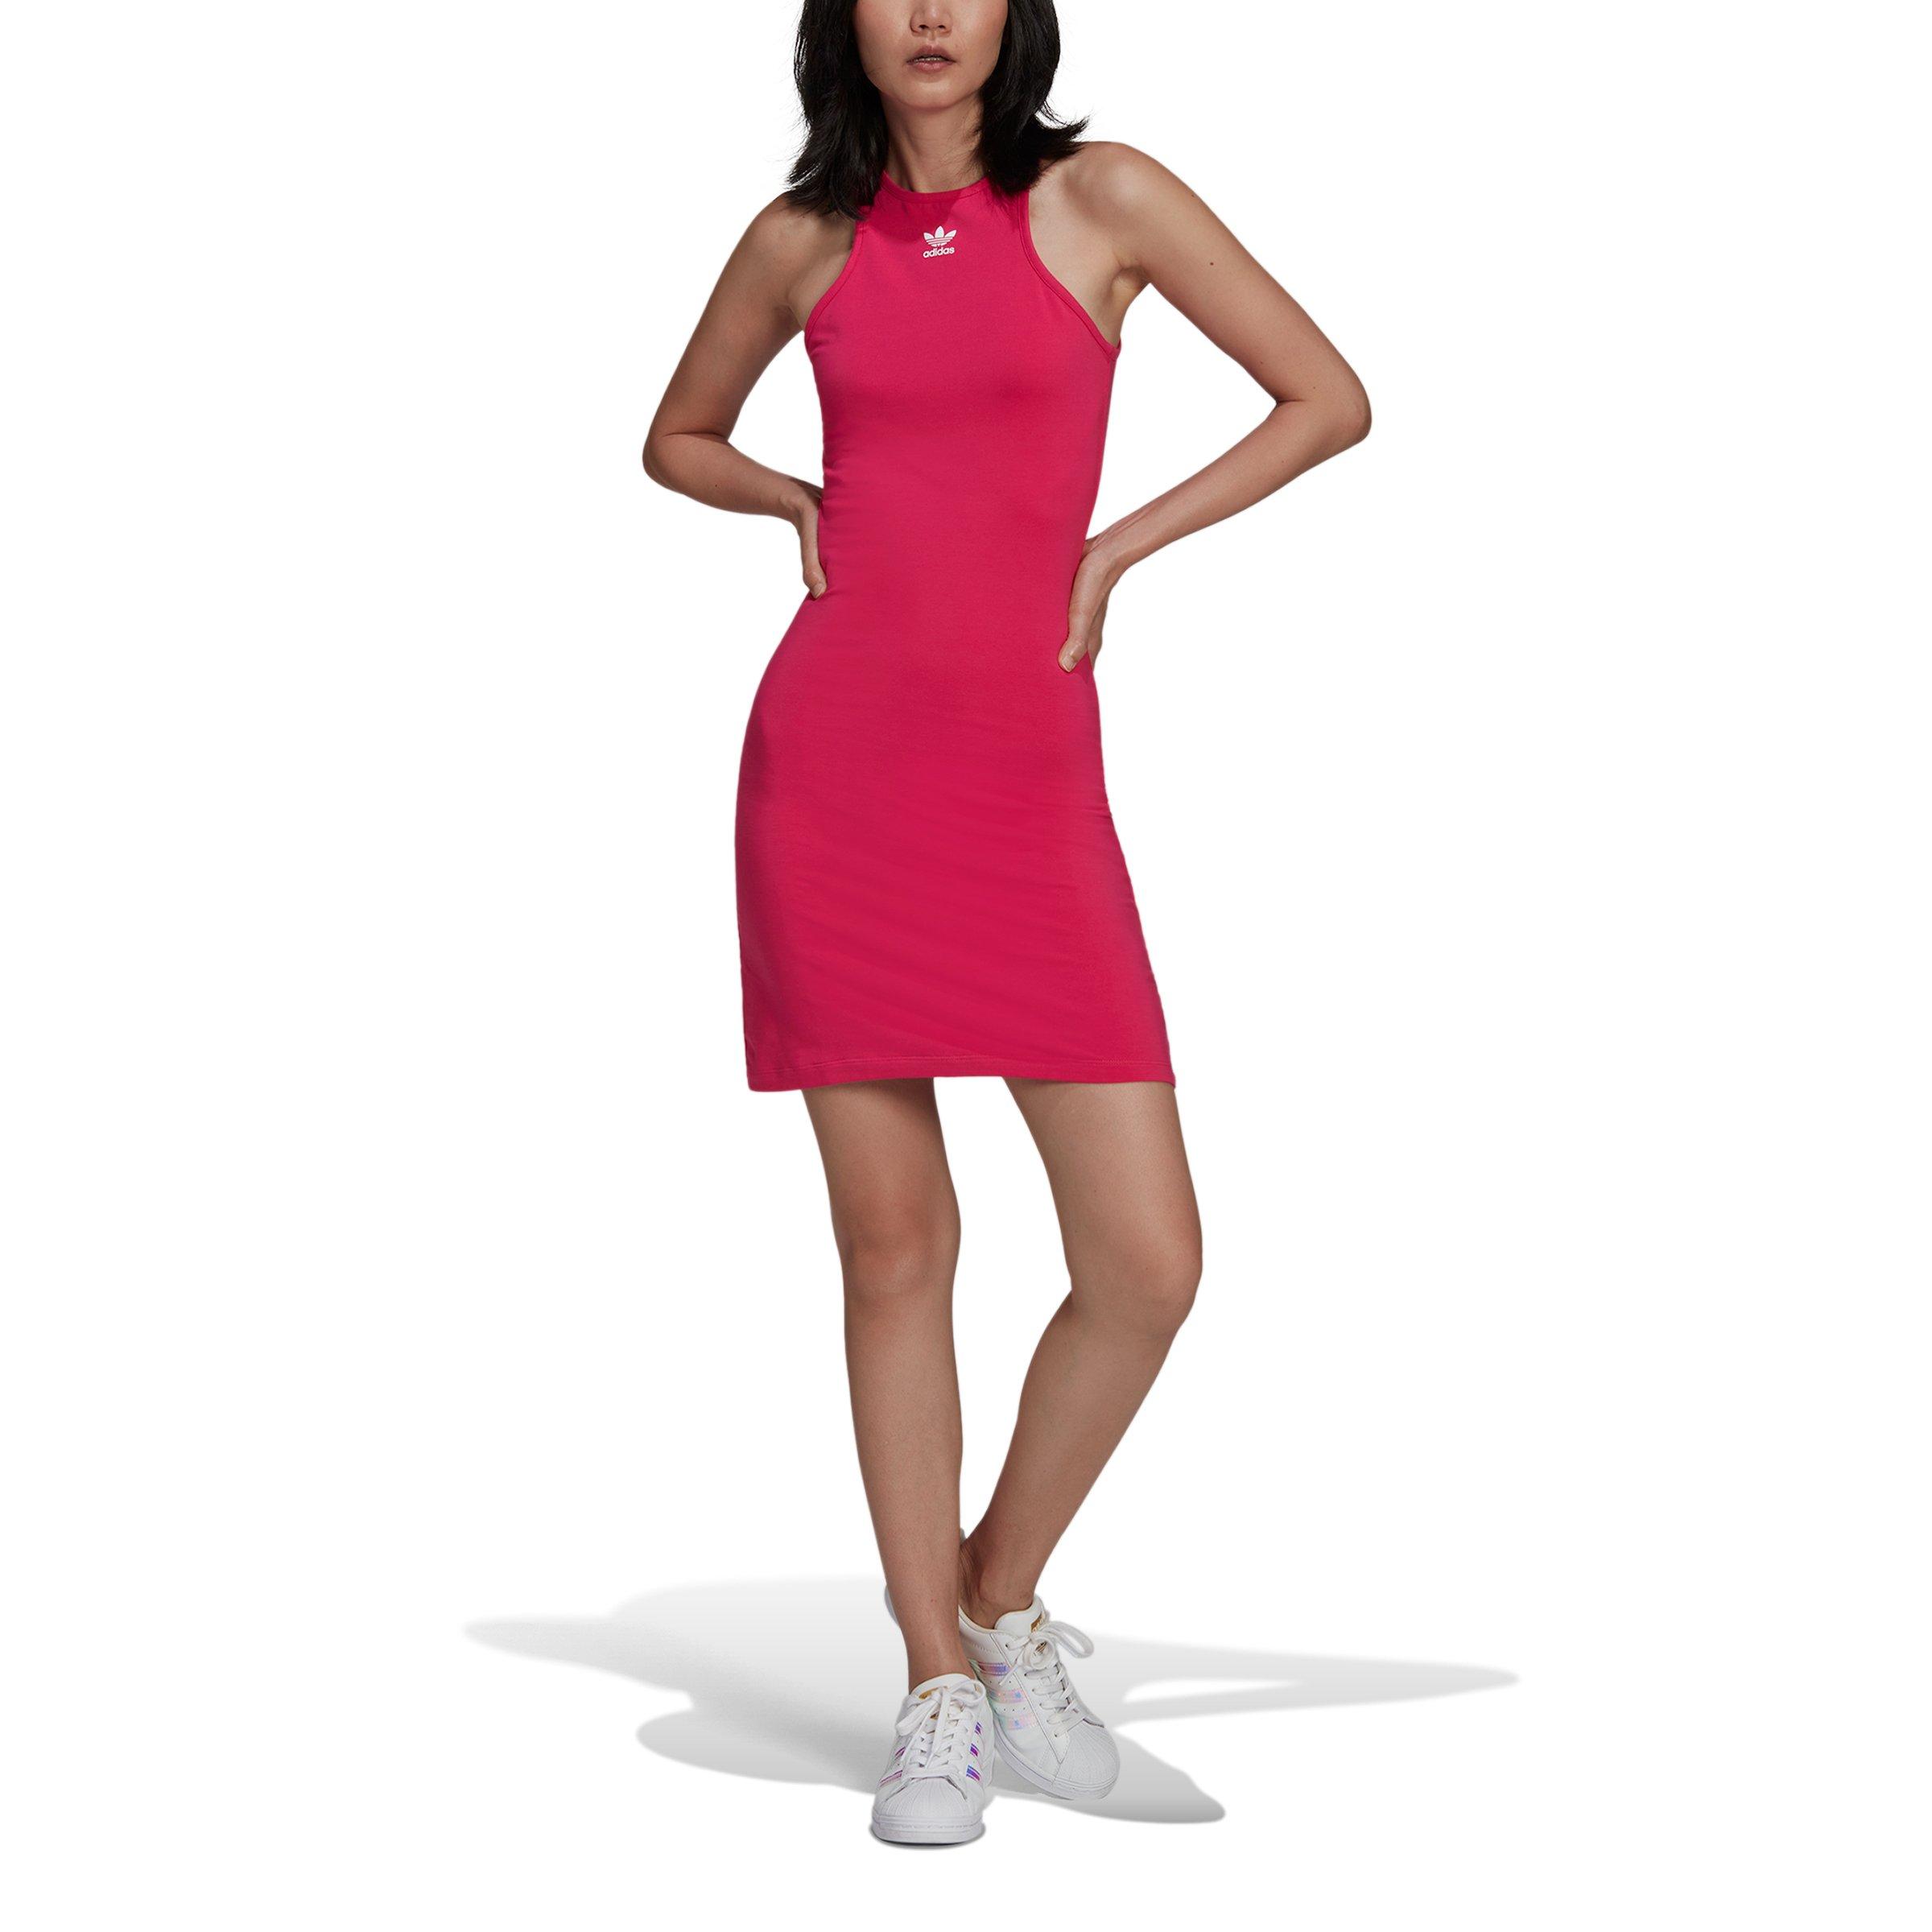 wrijving Middeleeuws vergroting adidas Women's Originals Adicolor Essentials "Pink" Racerback Dress